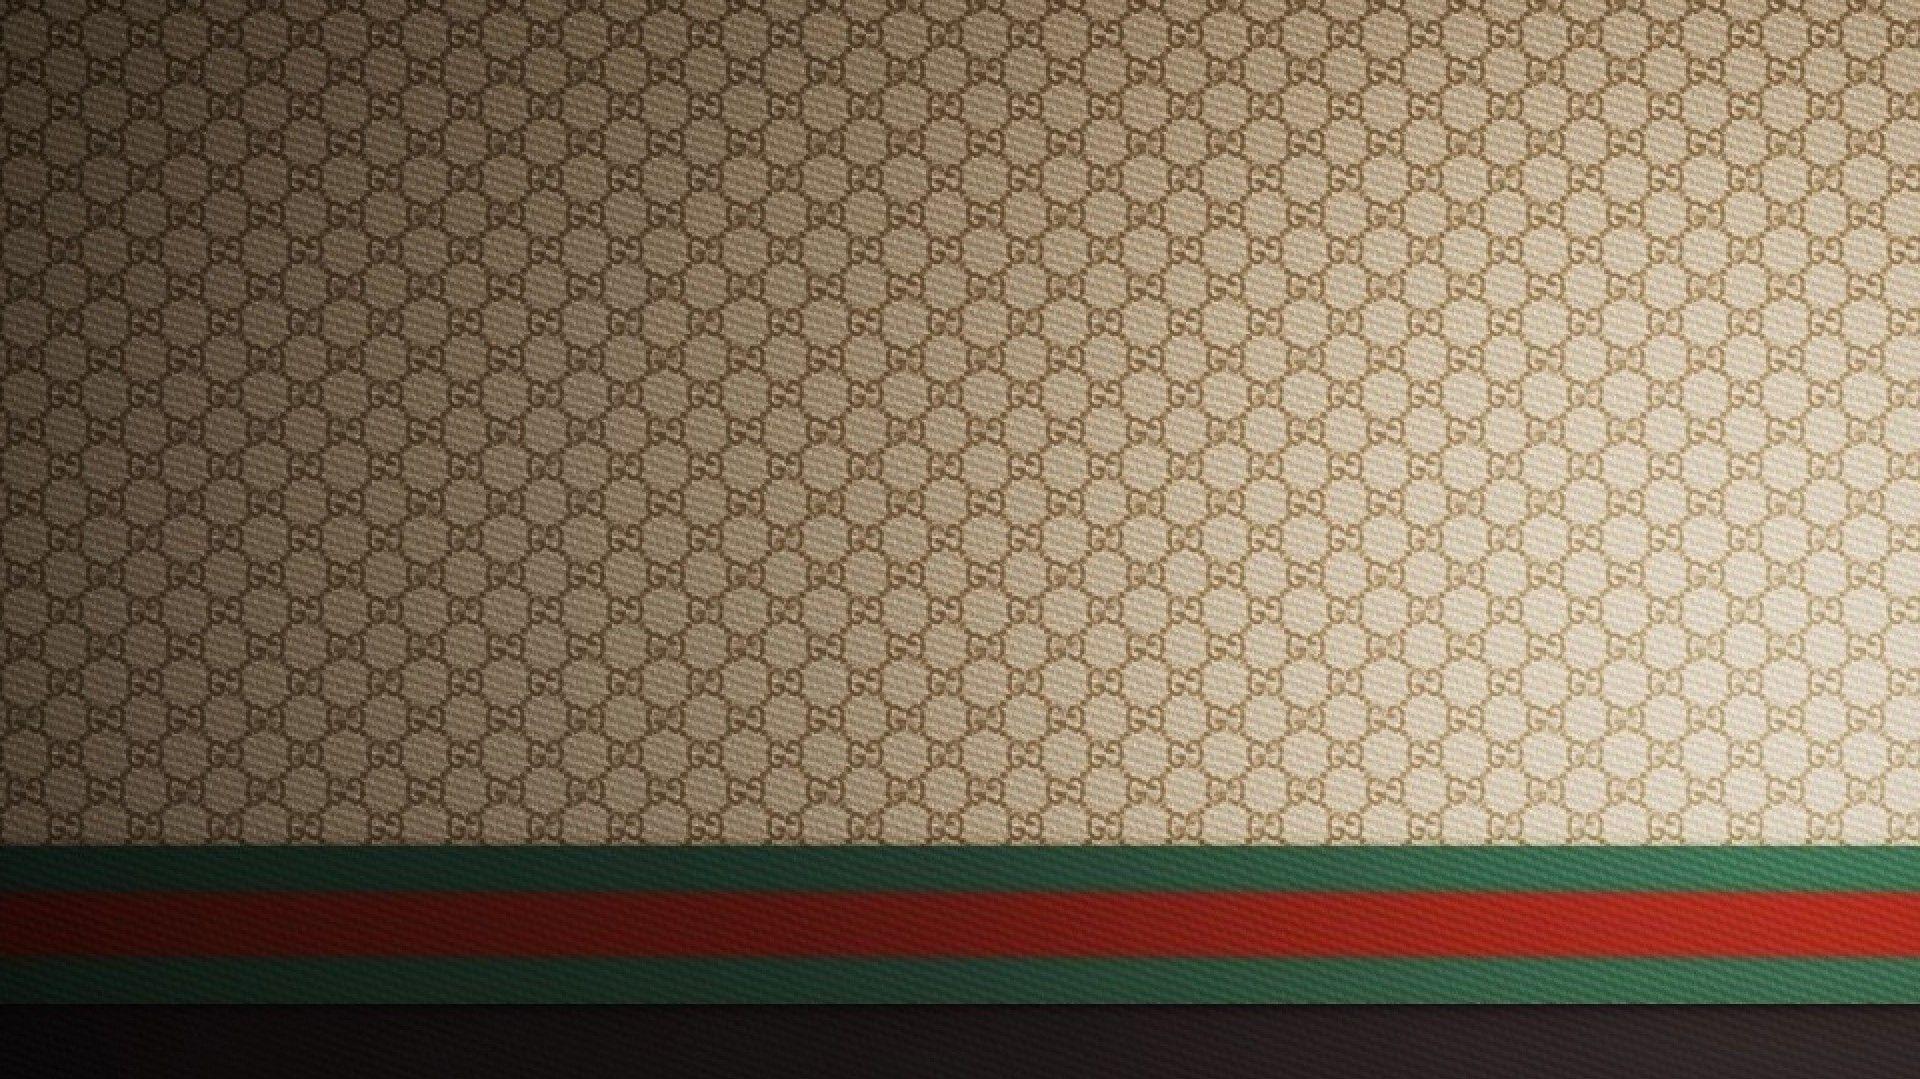 Supreme Gucci Wallpapers - WallpaperSafari